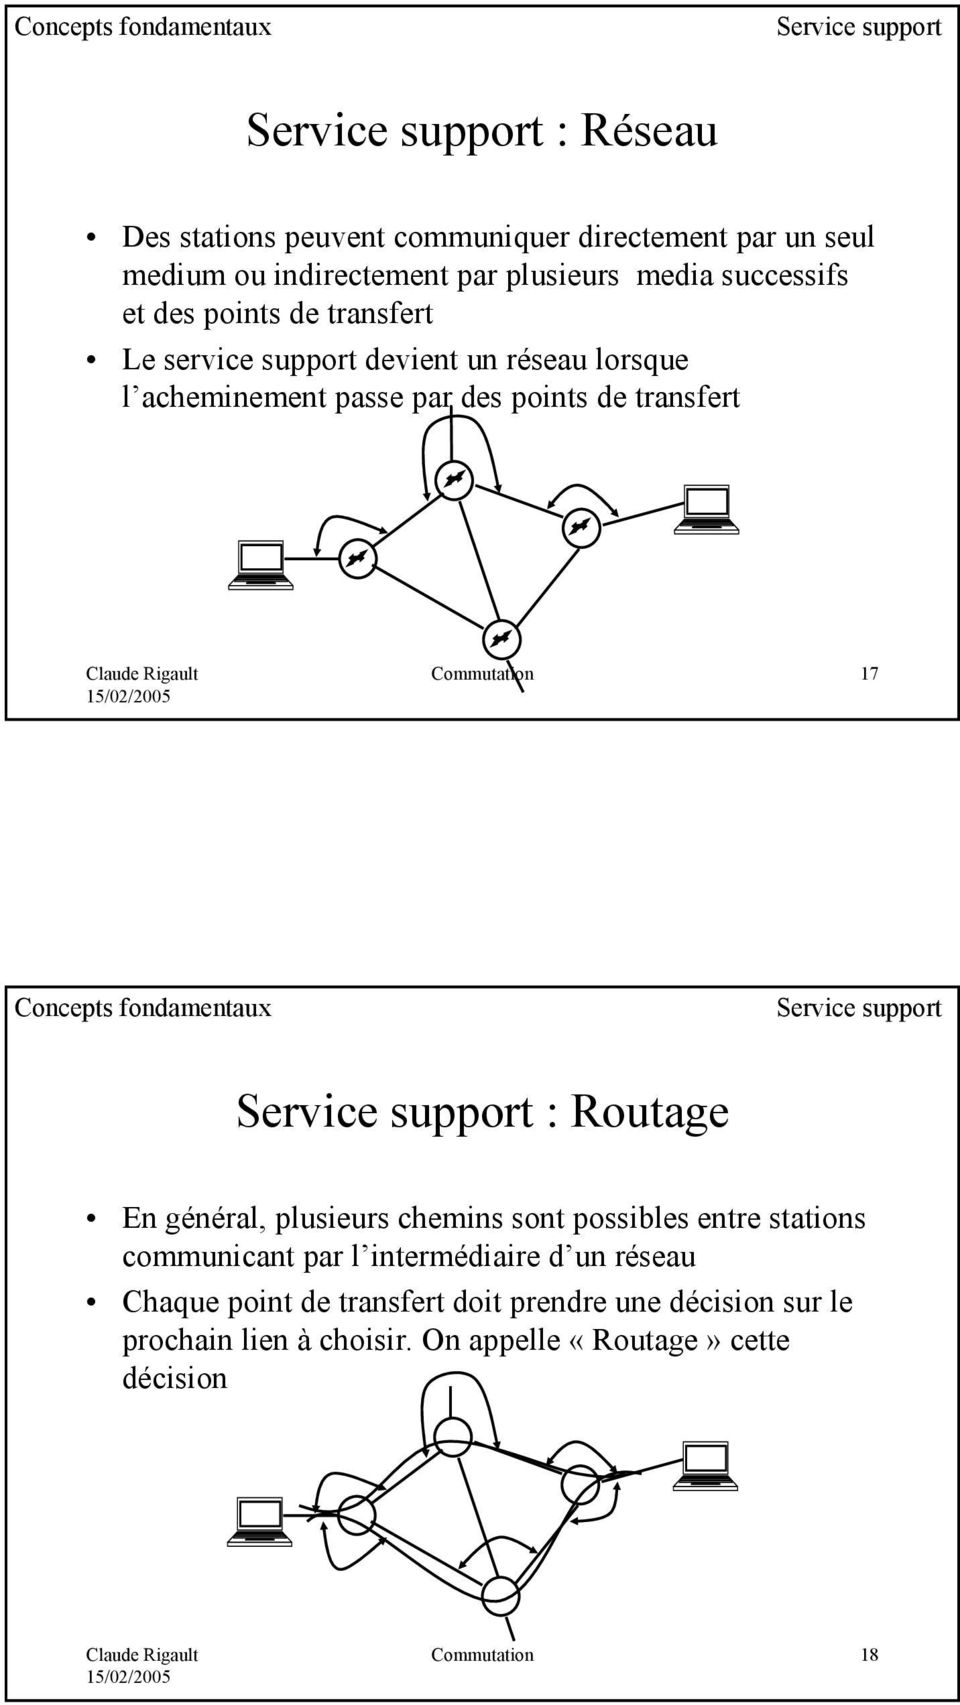 Commutation 17 Concepts fondamentaux Service support Service support : Routage En général, plusieurs chemins sont possibles entre stations communicant